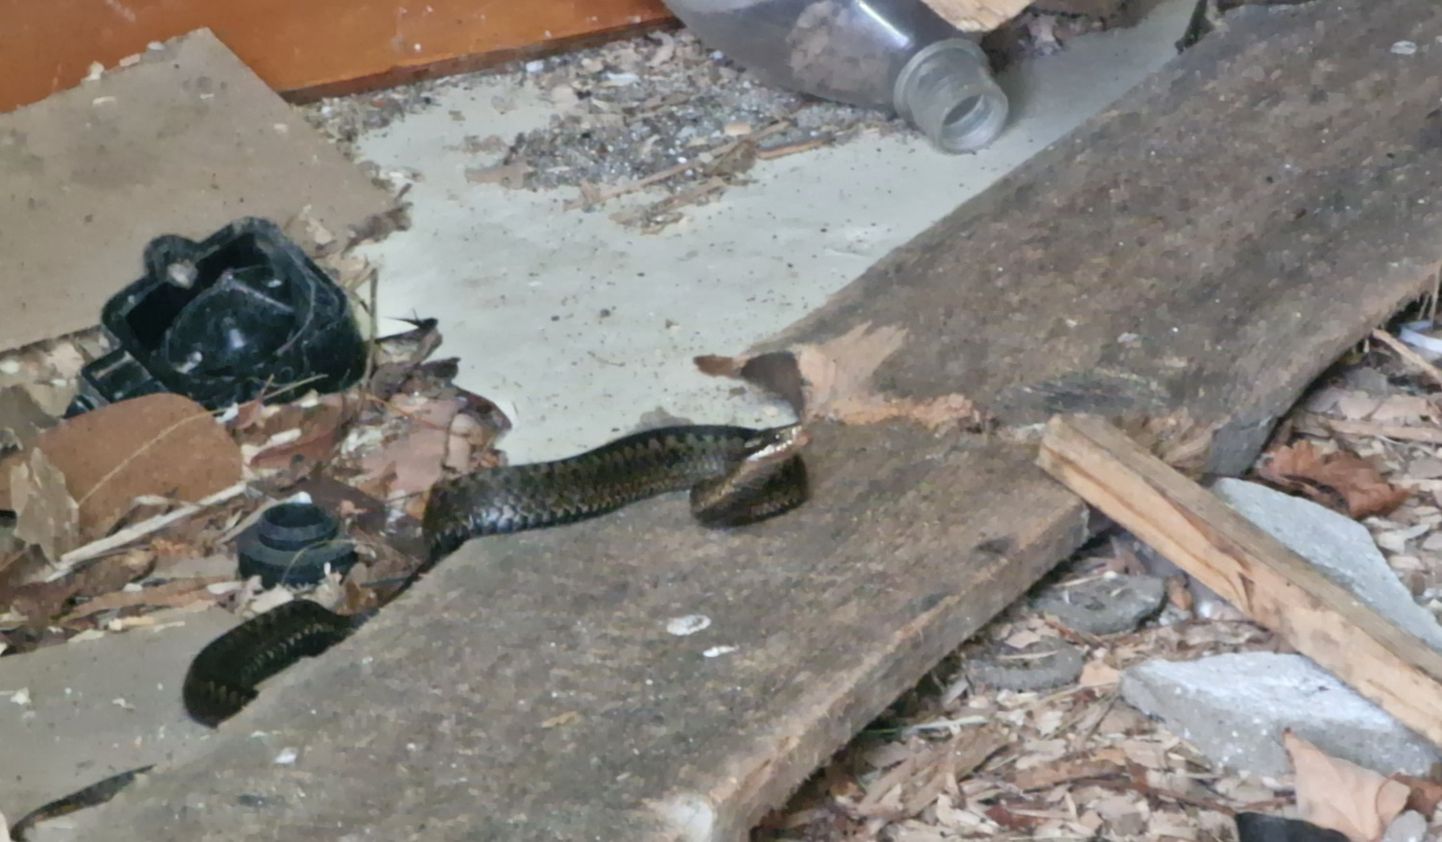 Рептилия может укусить, если на нее случайно наступить или напугать ее, ткнув палкой. На фото змея в заброшеном дачном доме предупреждает шипением корреспондента Rus.Postimees.